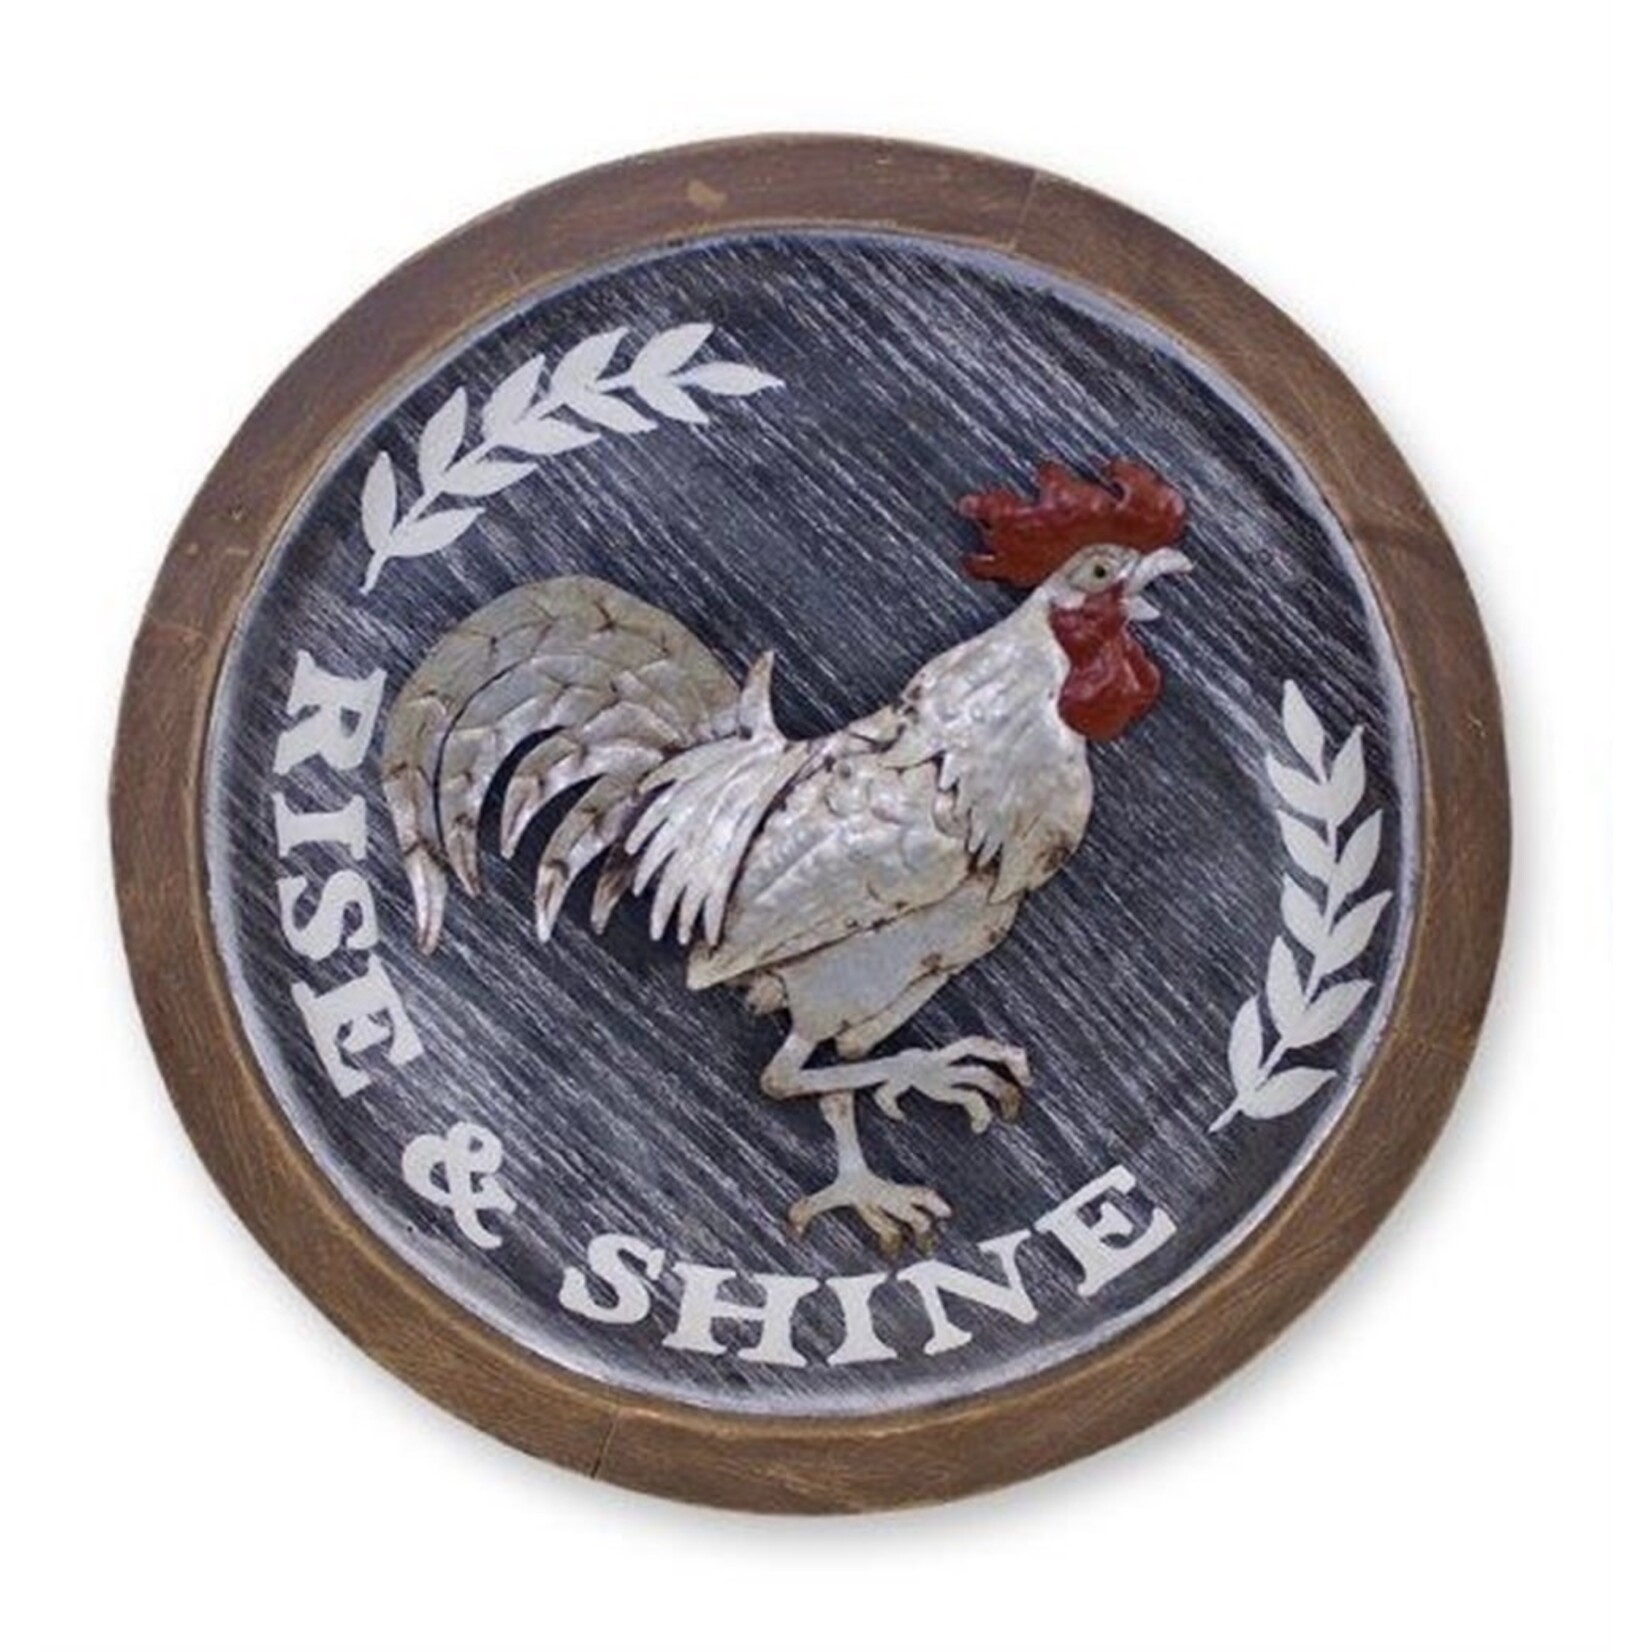 Melrose Round Chicken Plaque